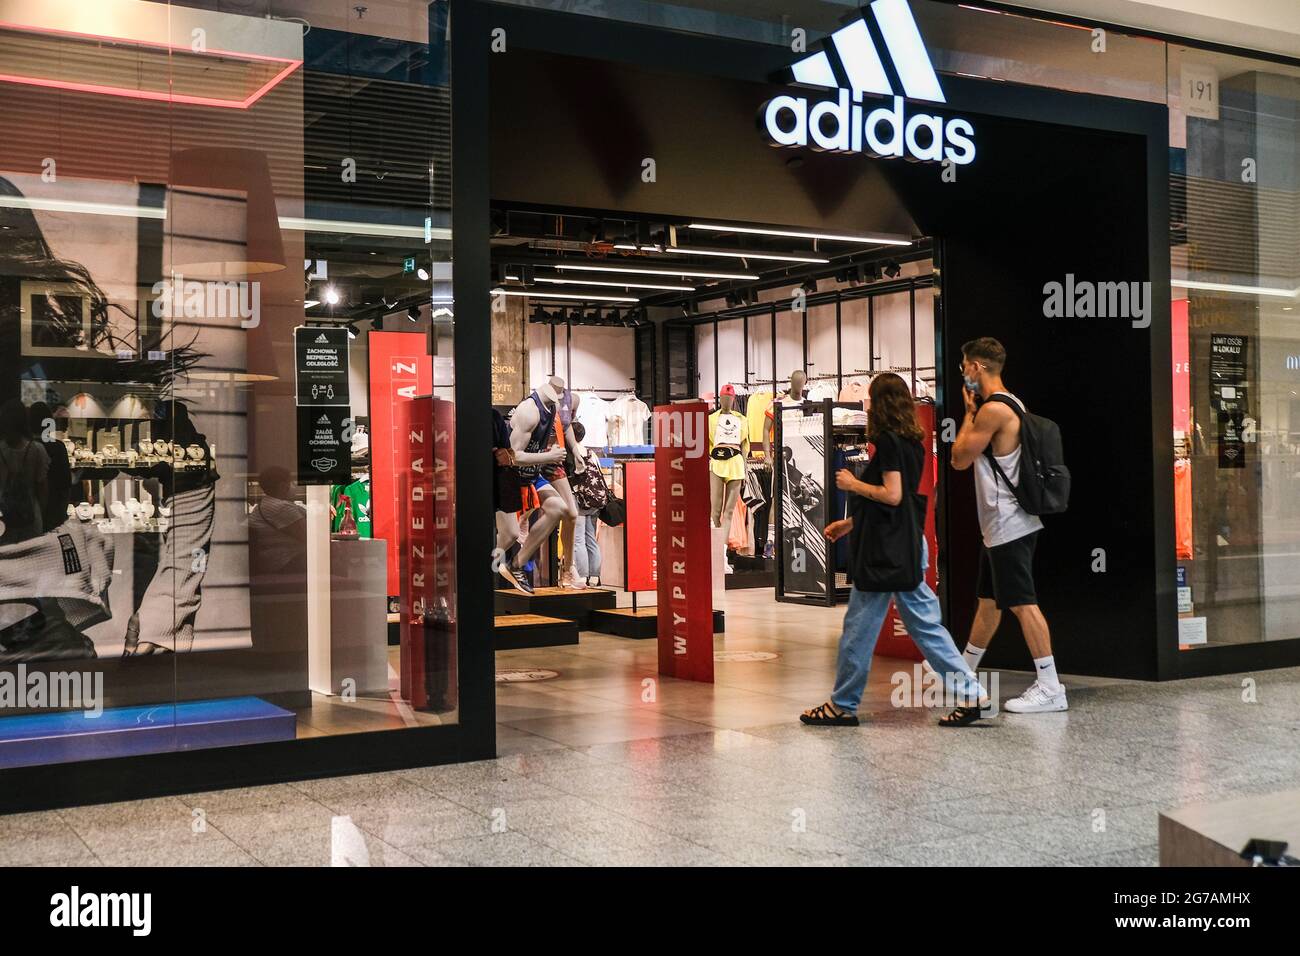 Imitación Valiente recuperar People seen entering an Adidas shop inside a shopping mall Stock Photo -  Alamy